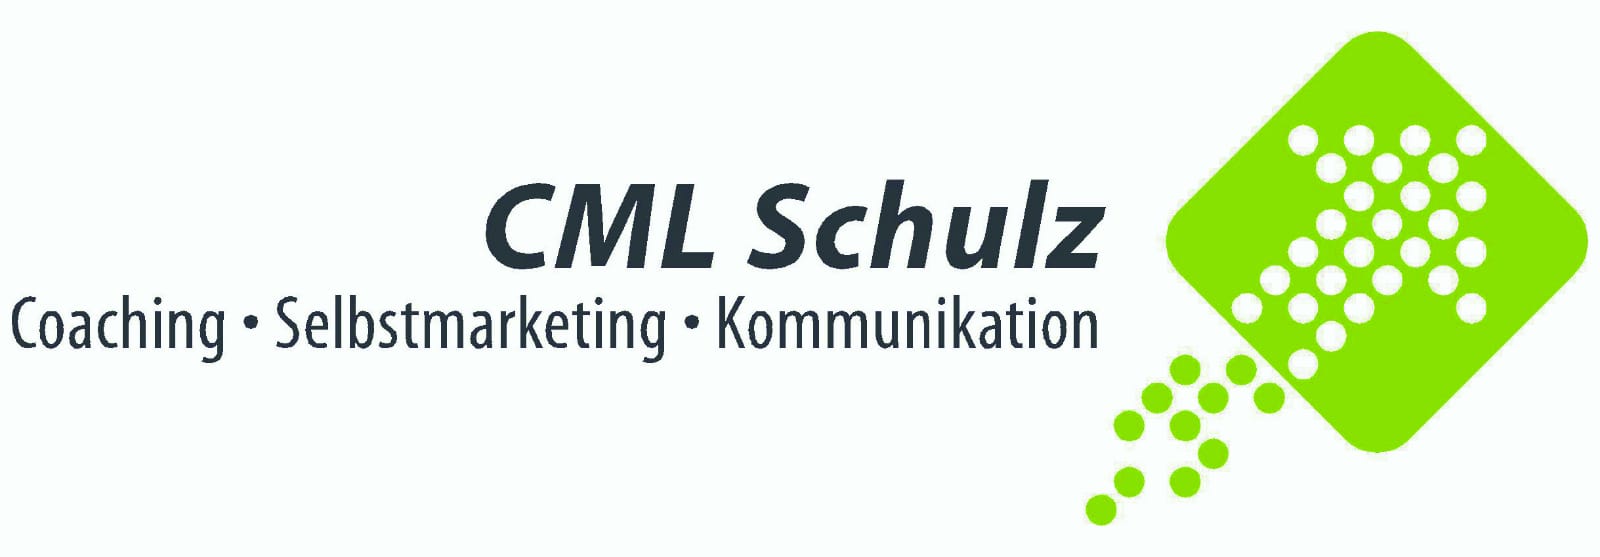 http://cml-schulz.de/modul-3/